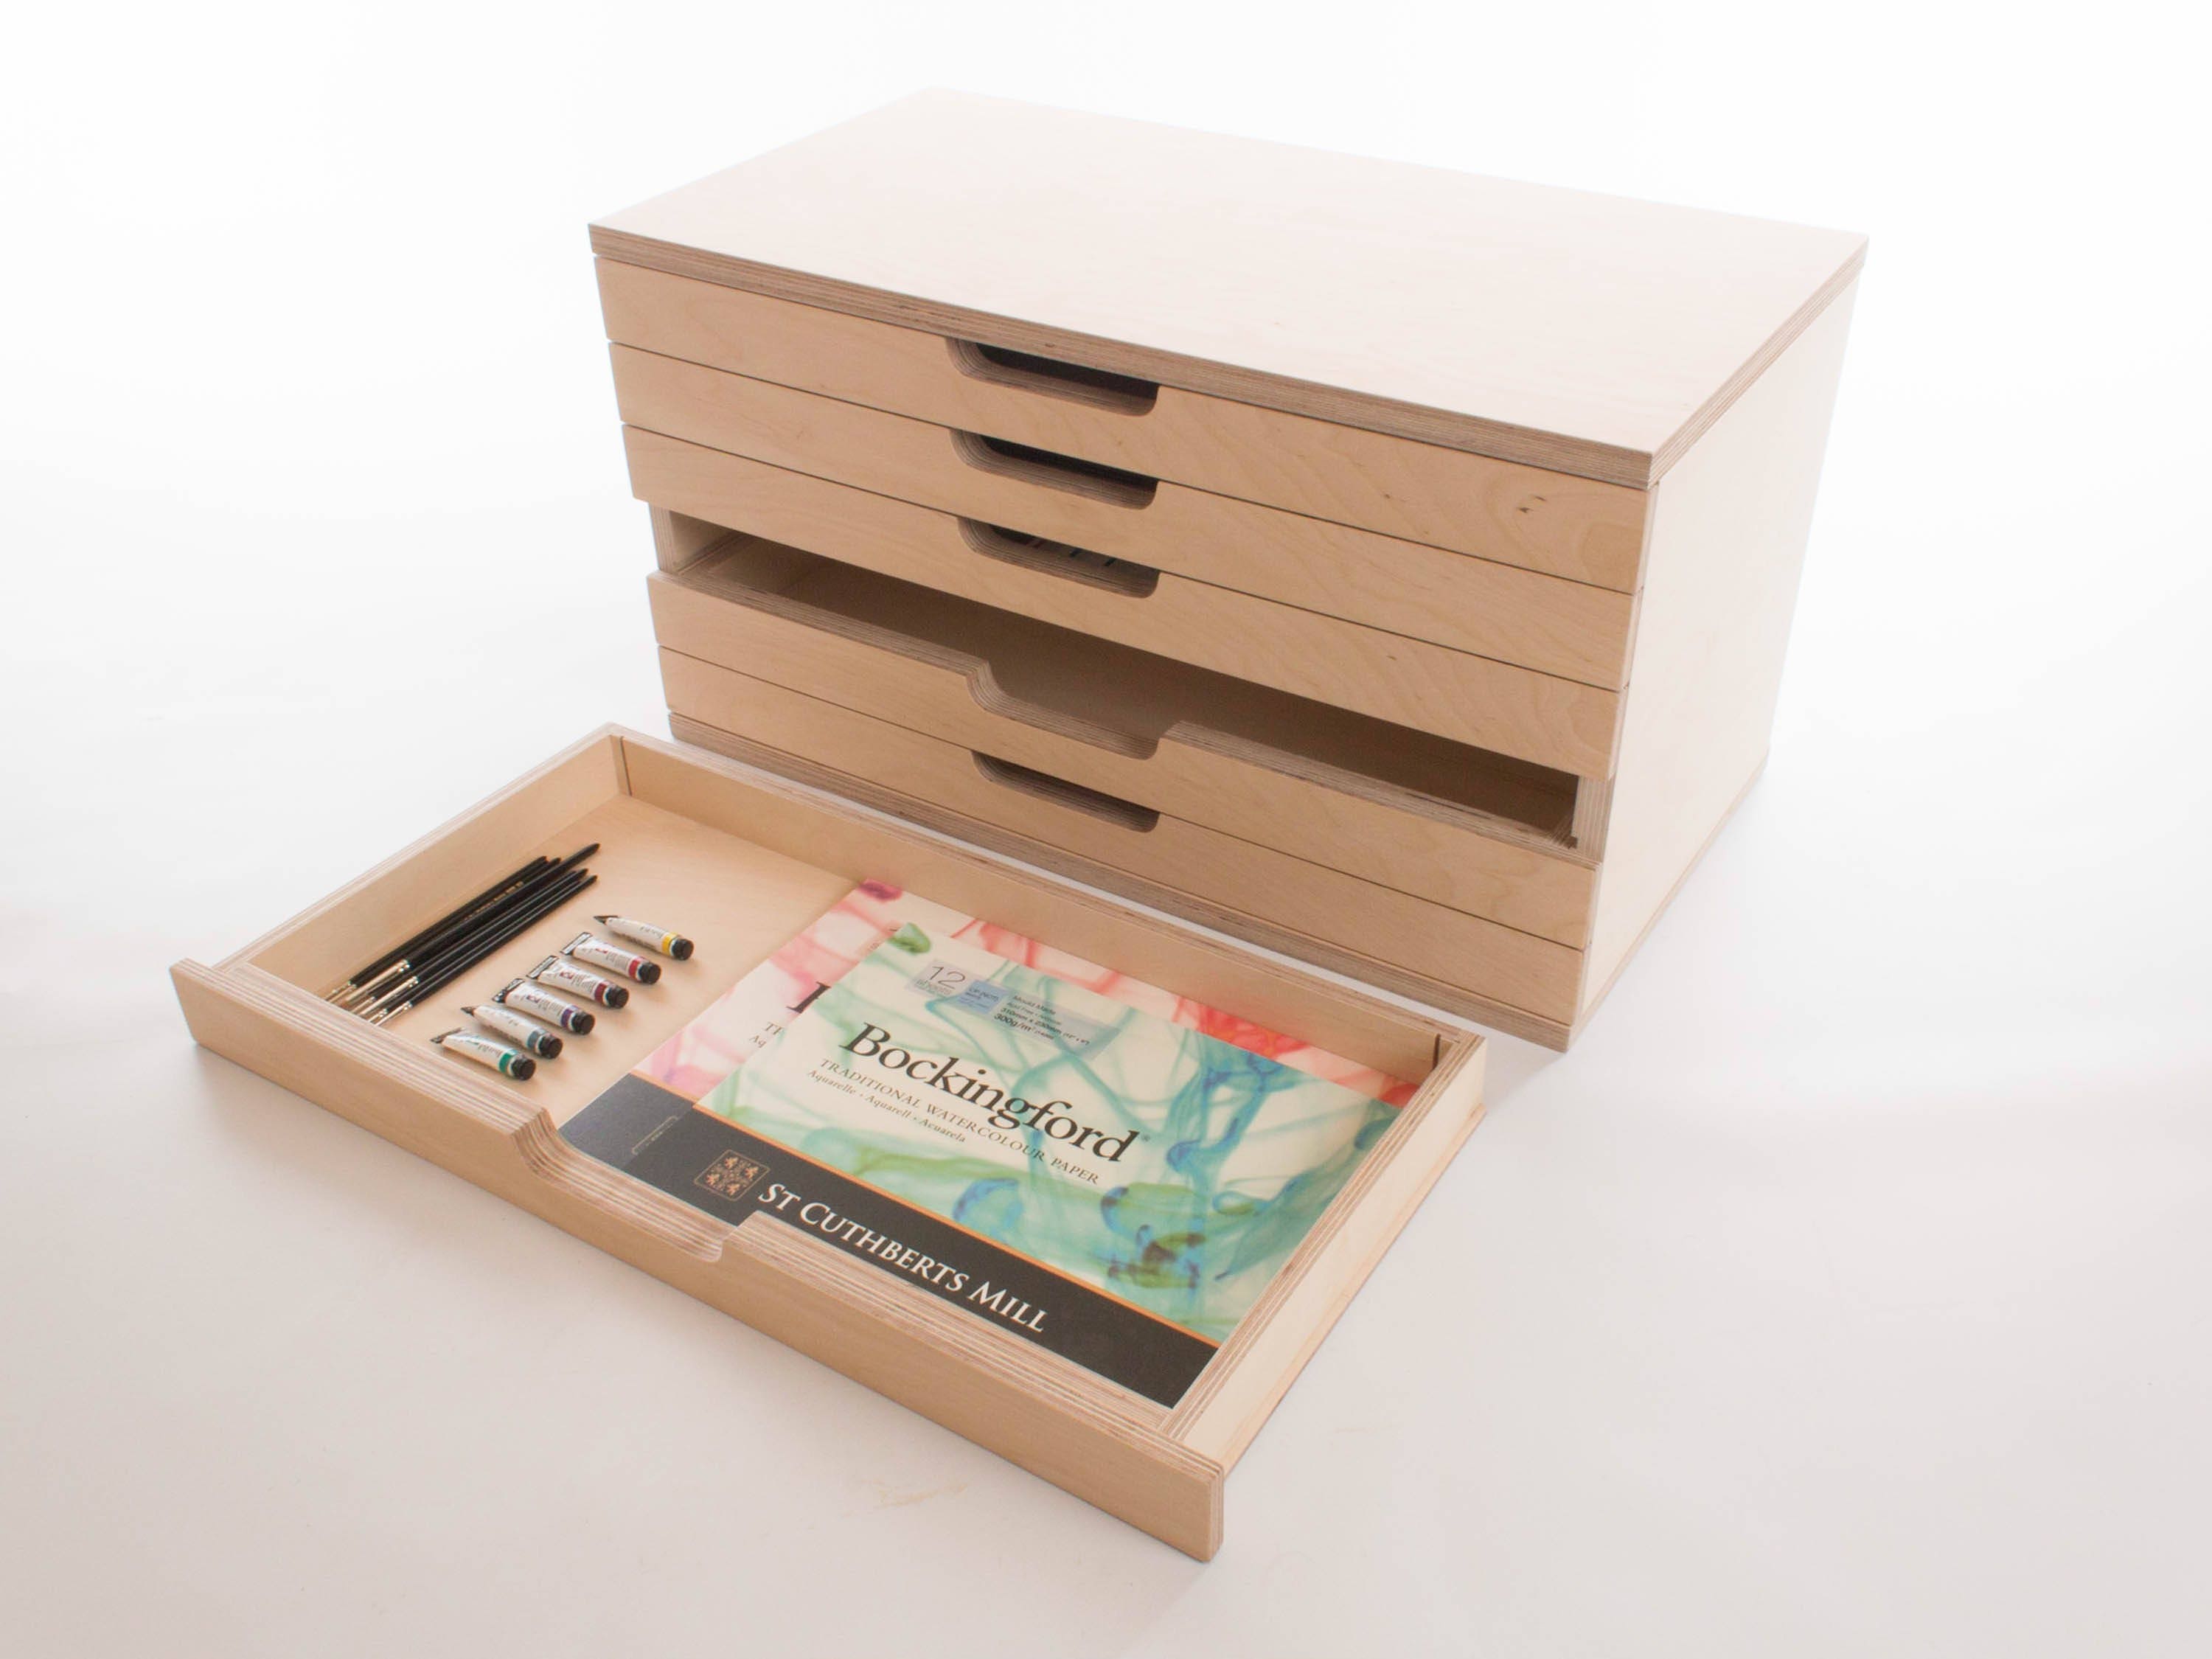 KINGART® Wooden Artist Storage Box, 6-Drawer, Designed Storage for